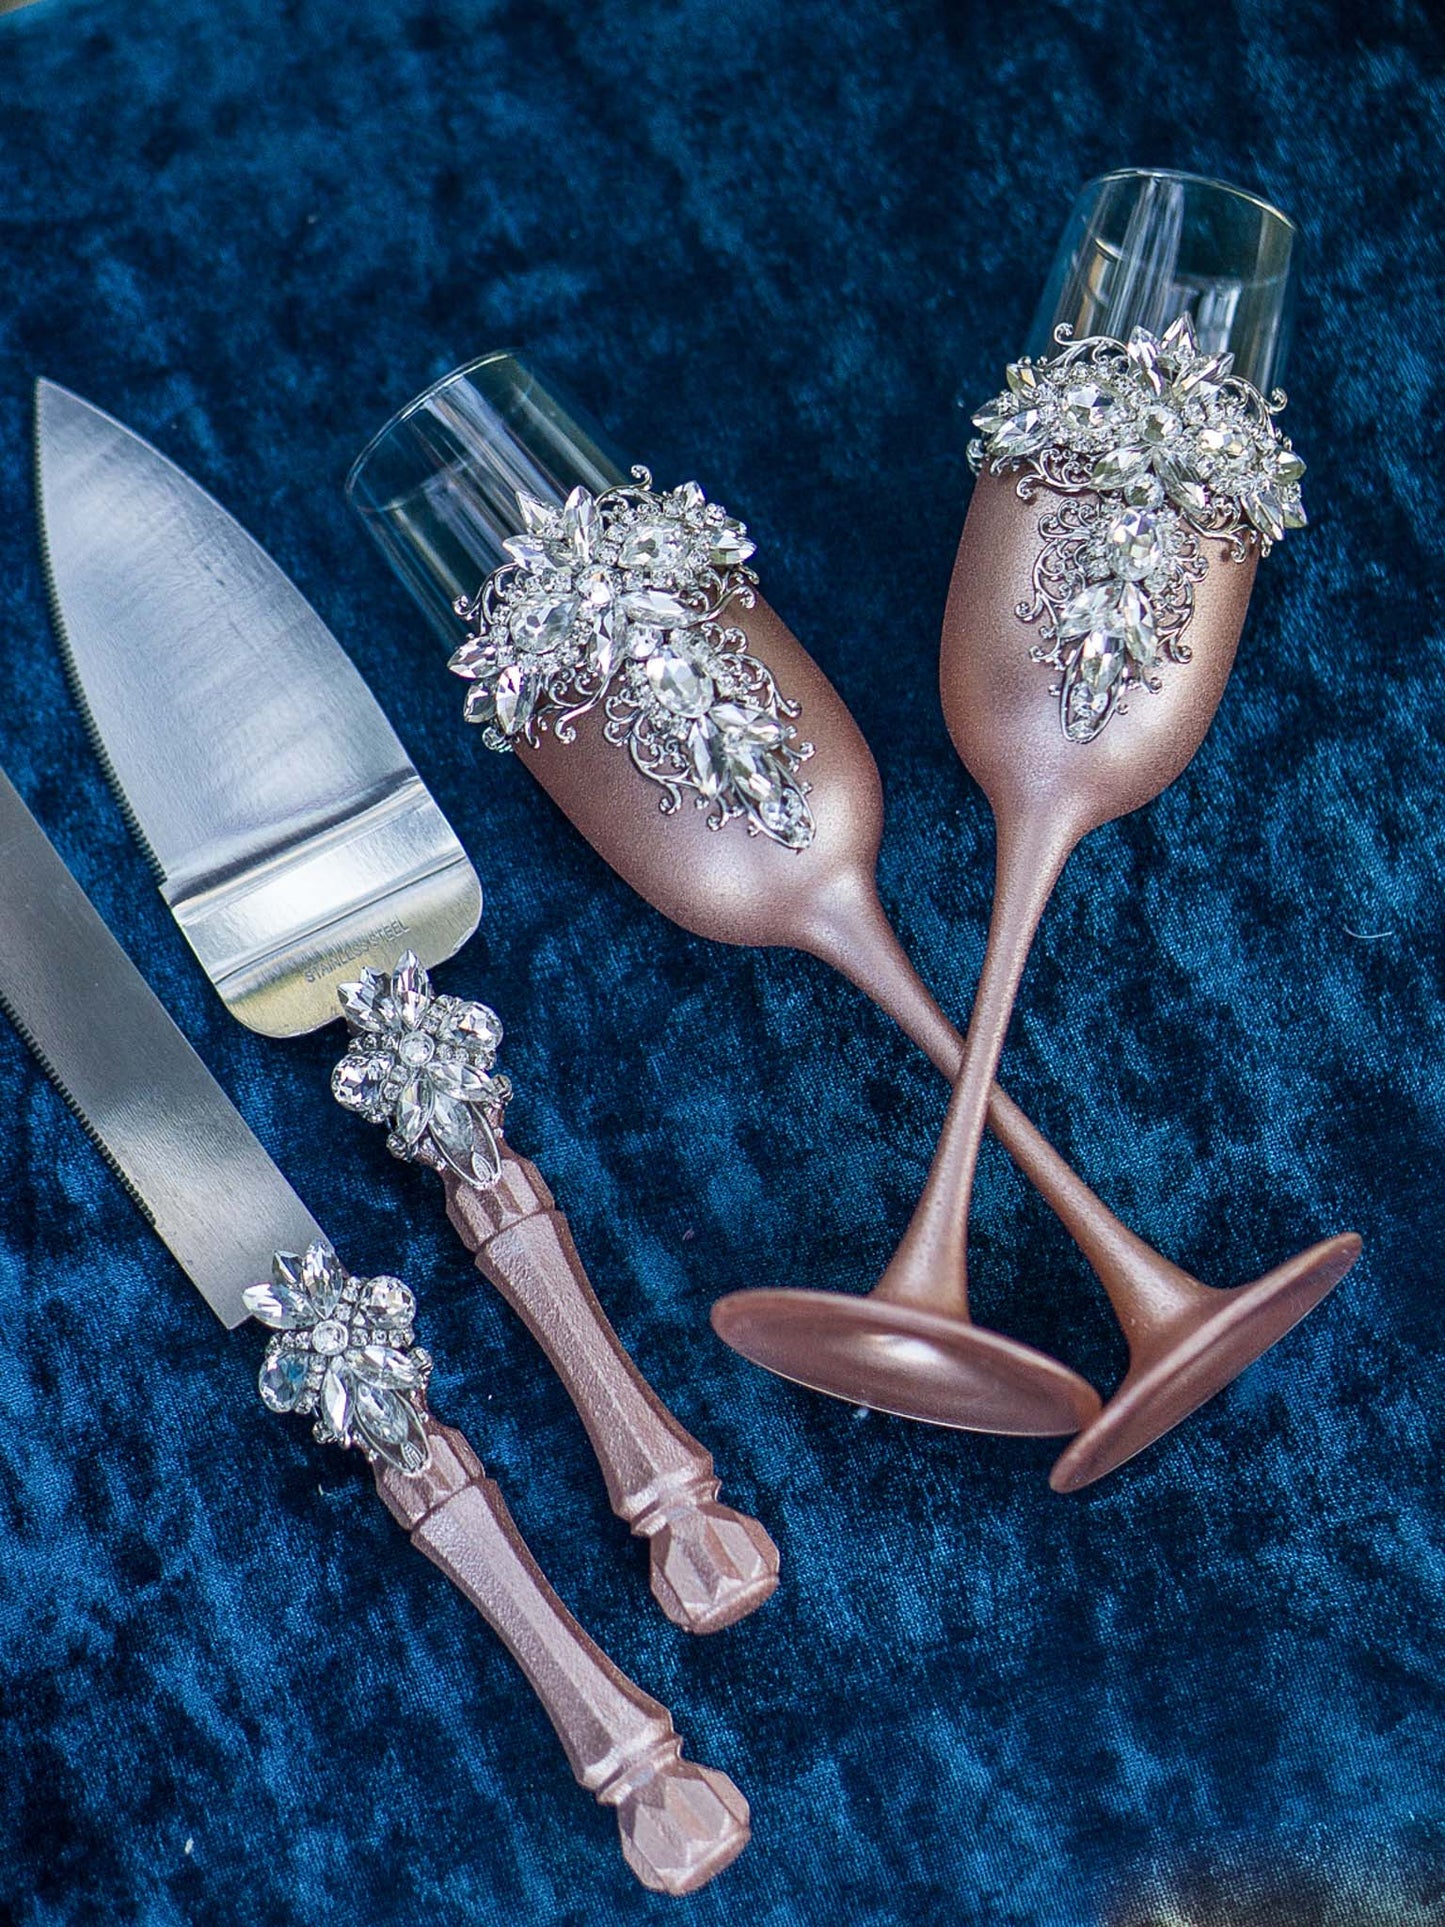 Elegant Rose Gold & Silver Crystals Toasting Flutes and Cake Knife Set